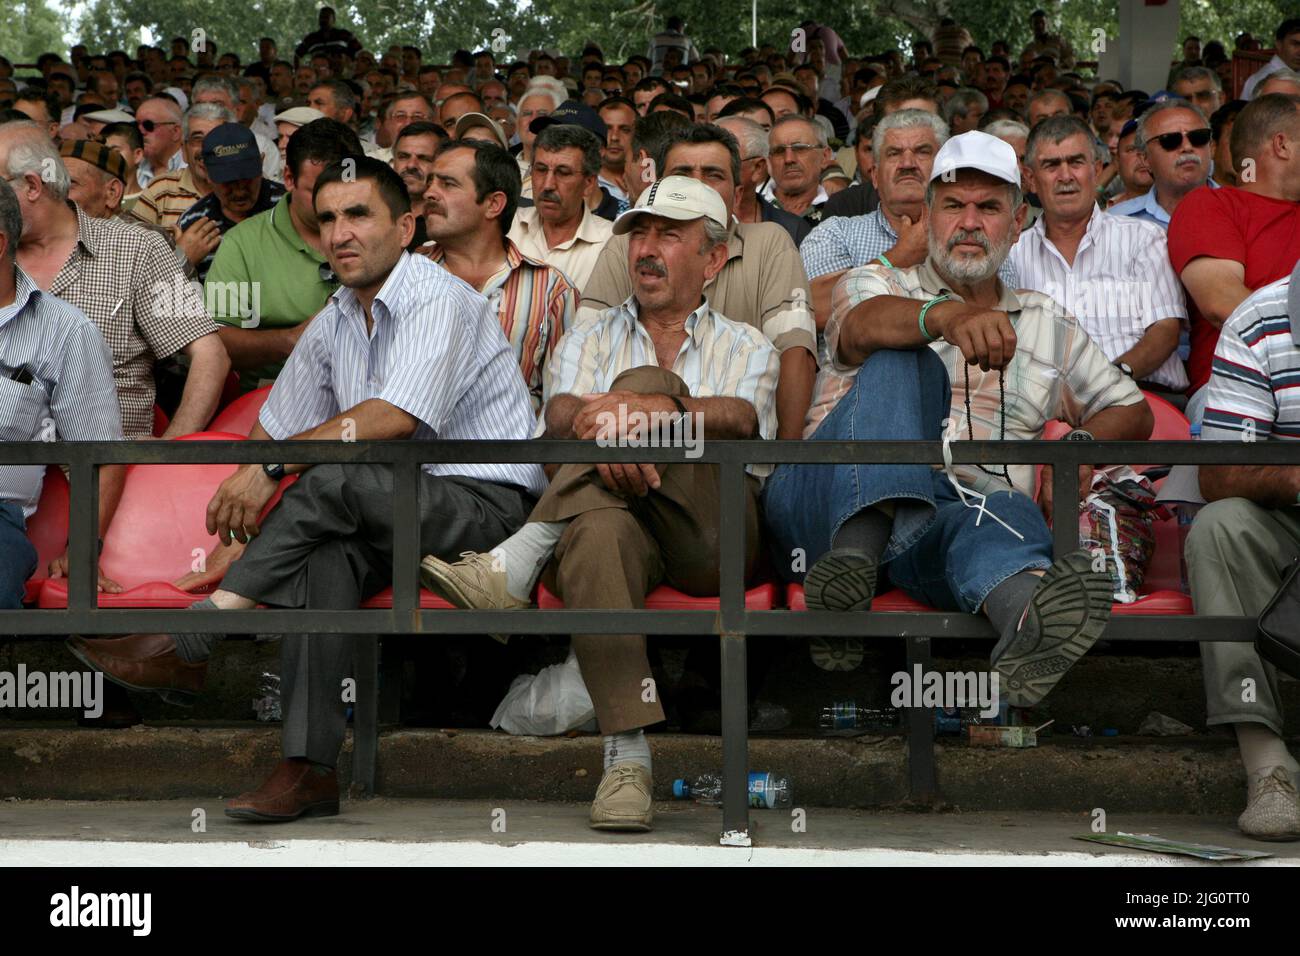 Kırkpınar (Wrestling du pétrole turc). Les gens regardent les lutteurs se battre lors du tournoi Kırkpınar 648th à Edirne, Turquie, le 5 juillet 2009. Banque D'Images